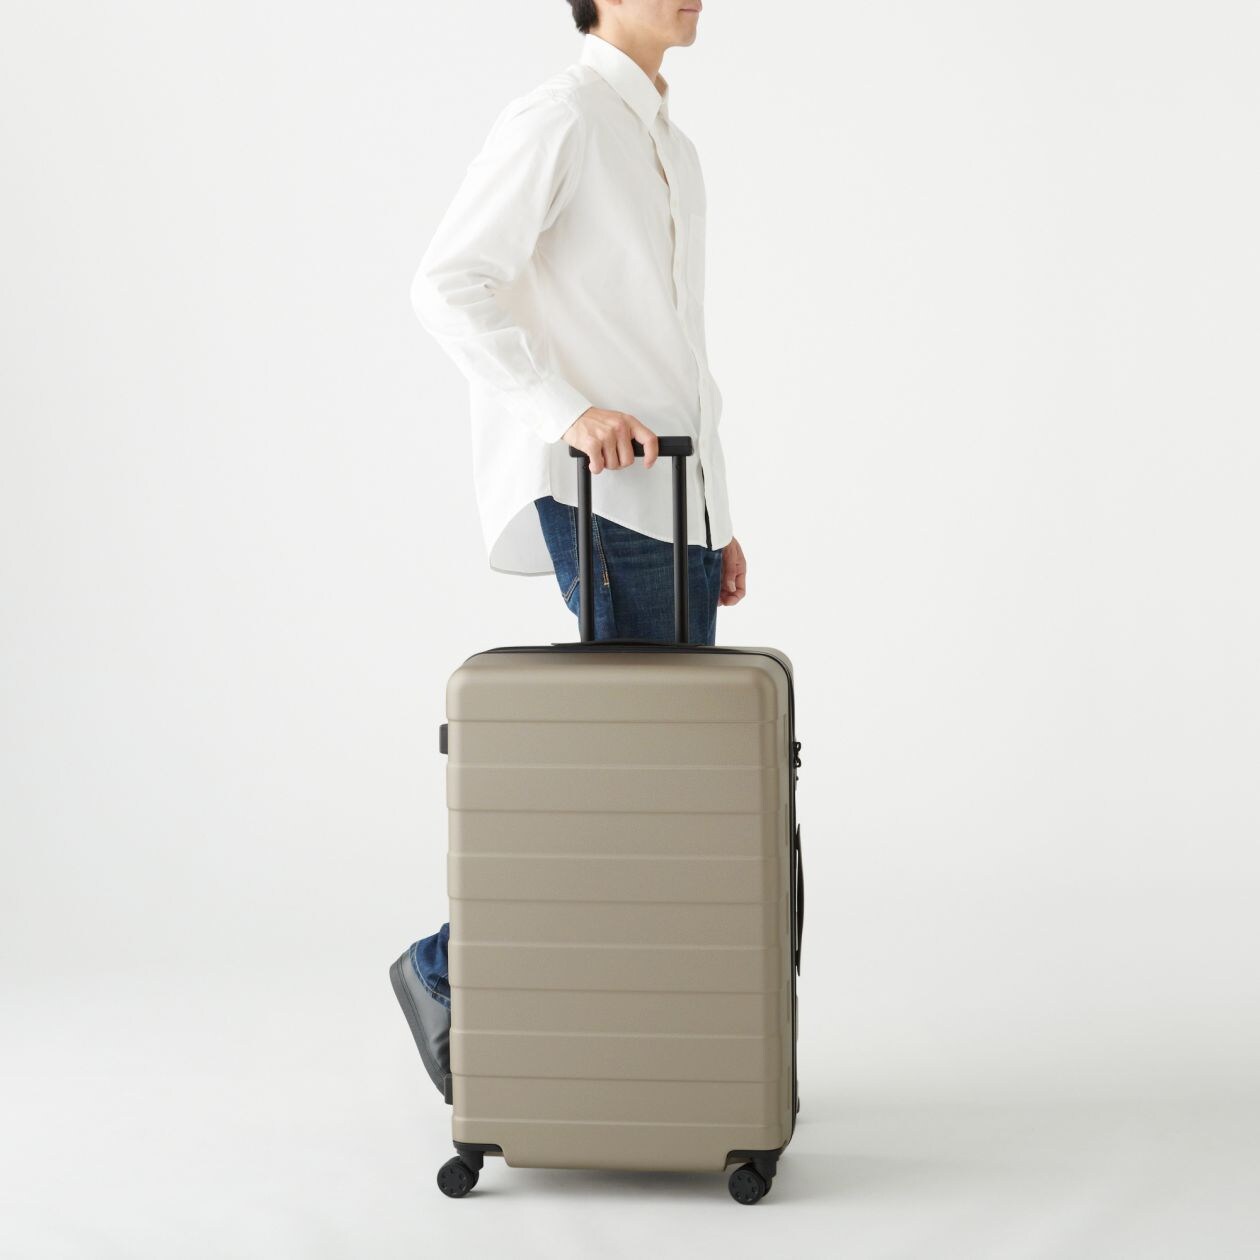 日本新品 無印良品 キャリーケース 88L ネイビー 旅行用バッグ 